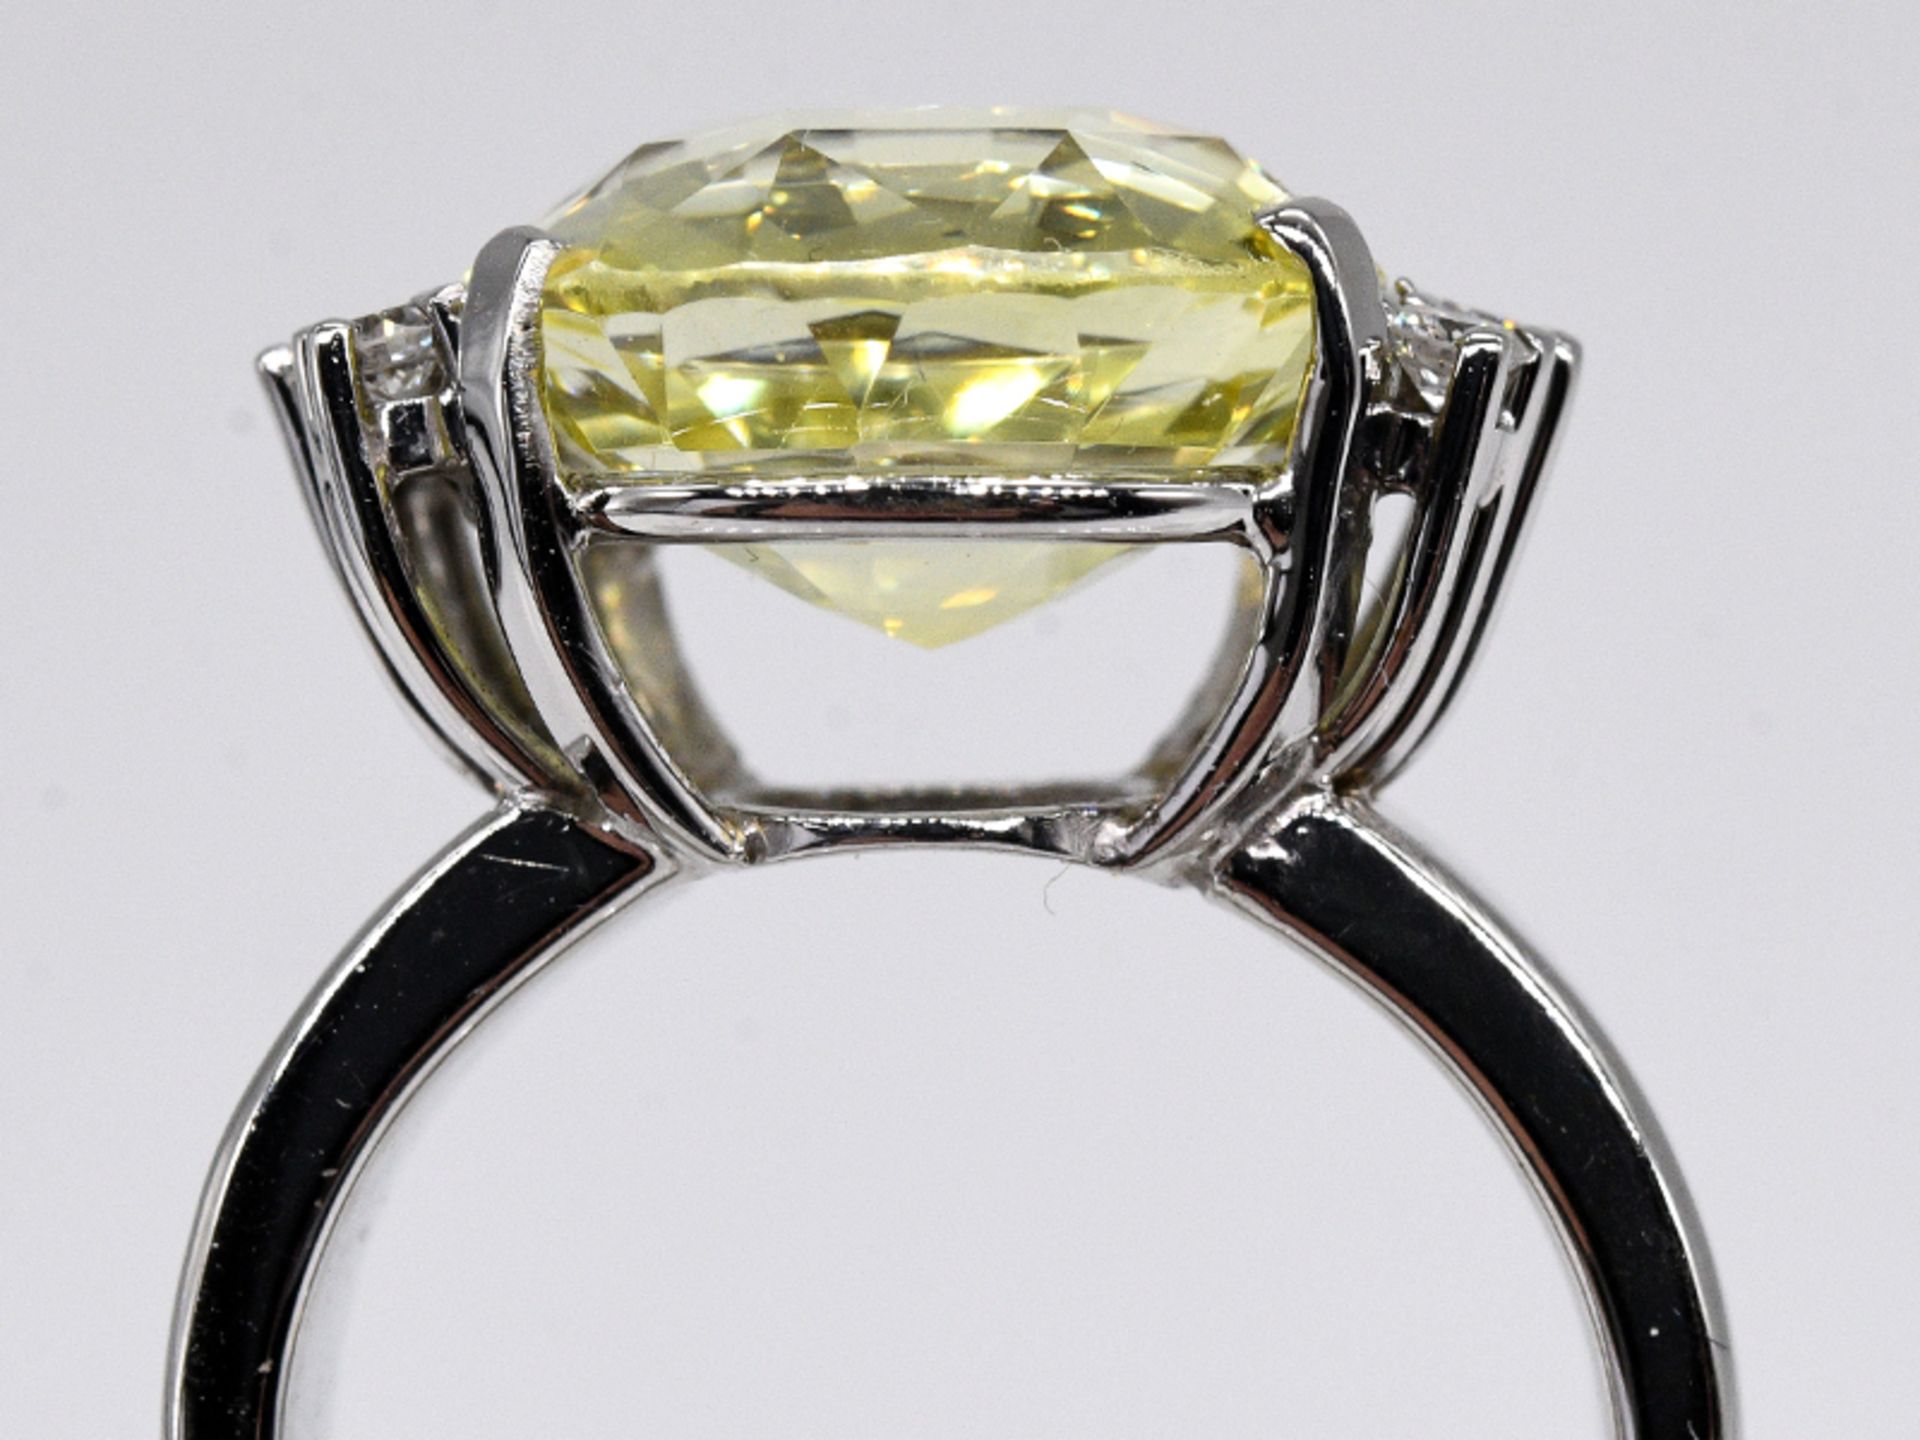 Cocktail-Ring mit gelbem Ceylon-Saphir ca. 11,05 ct und 6 Brillanten, zus. ca. 0,3 ct, Goldschmiede - Bild 4 aus 5